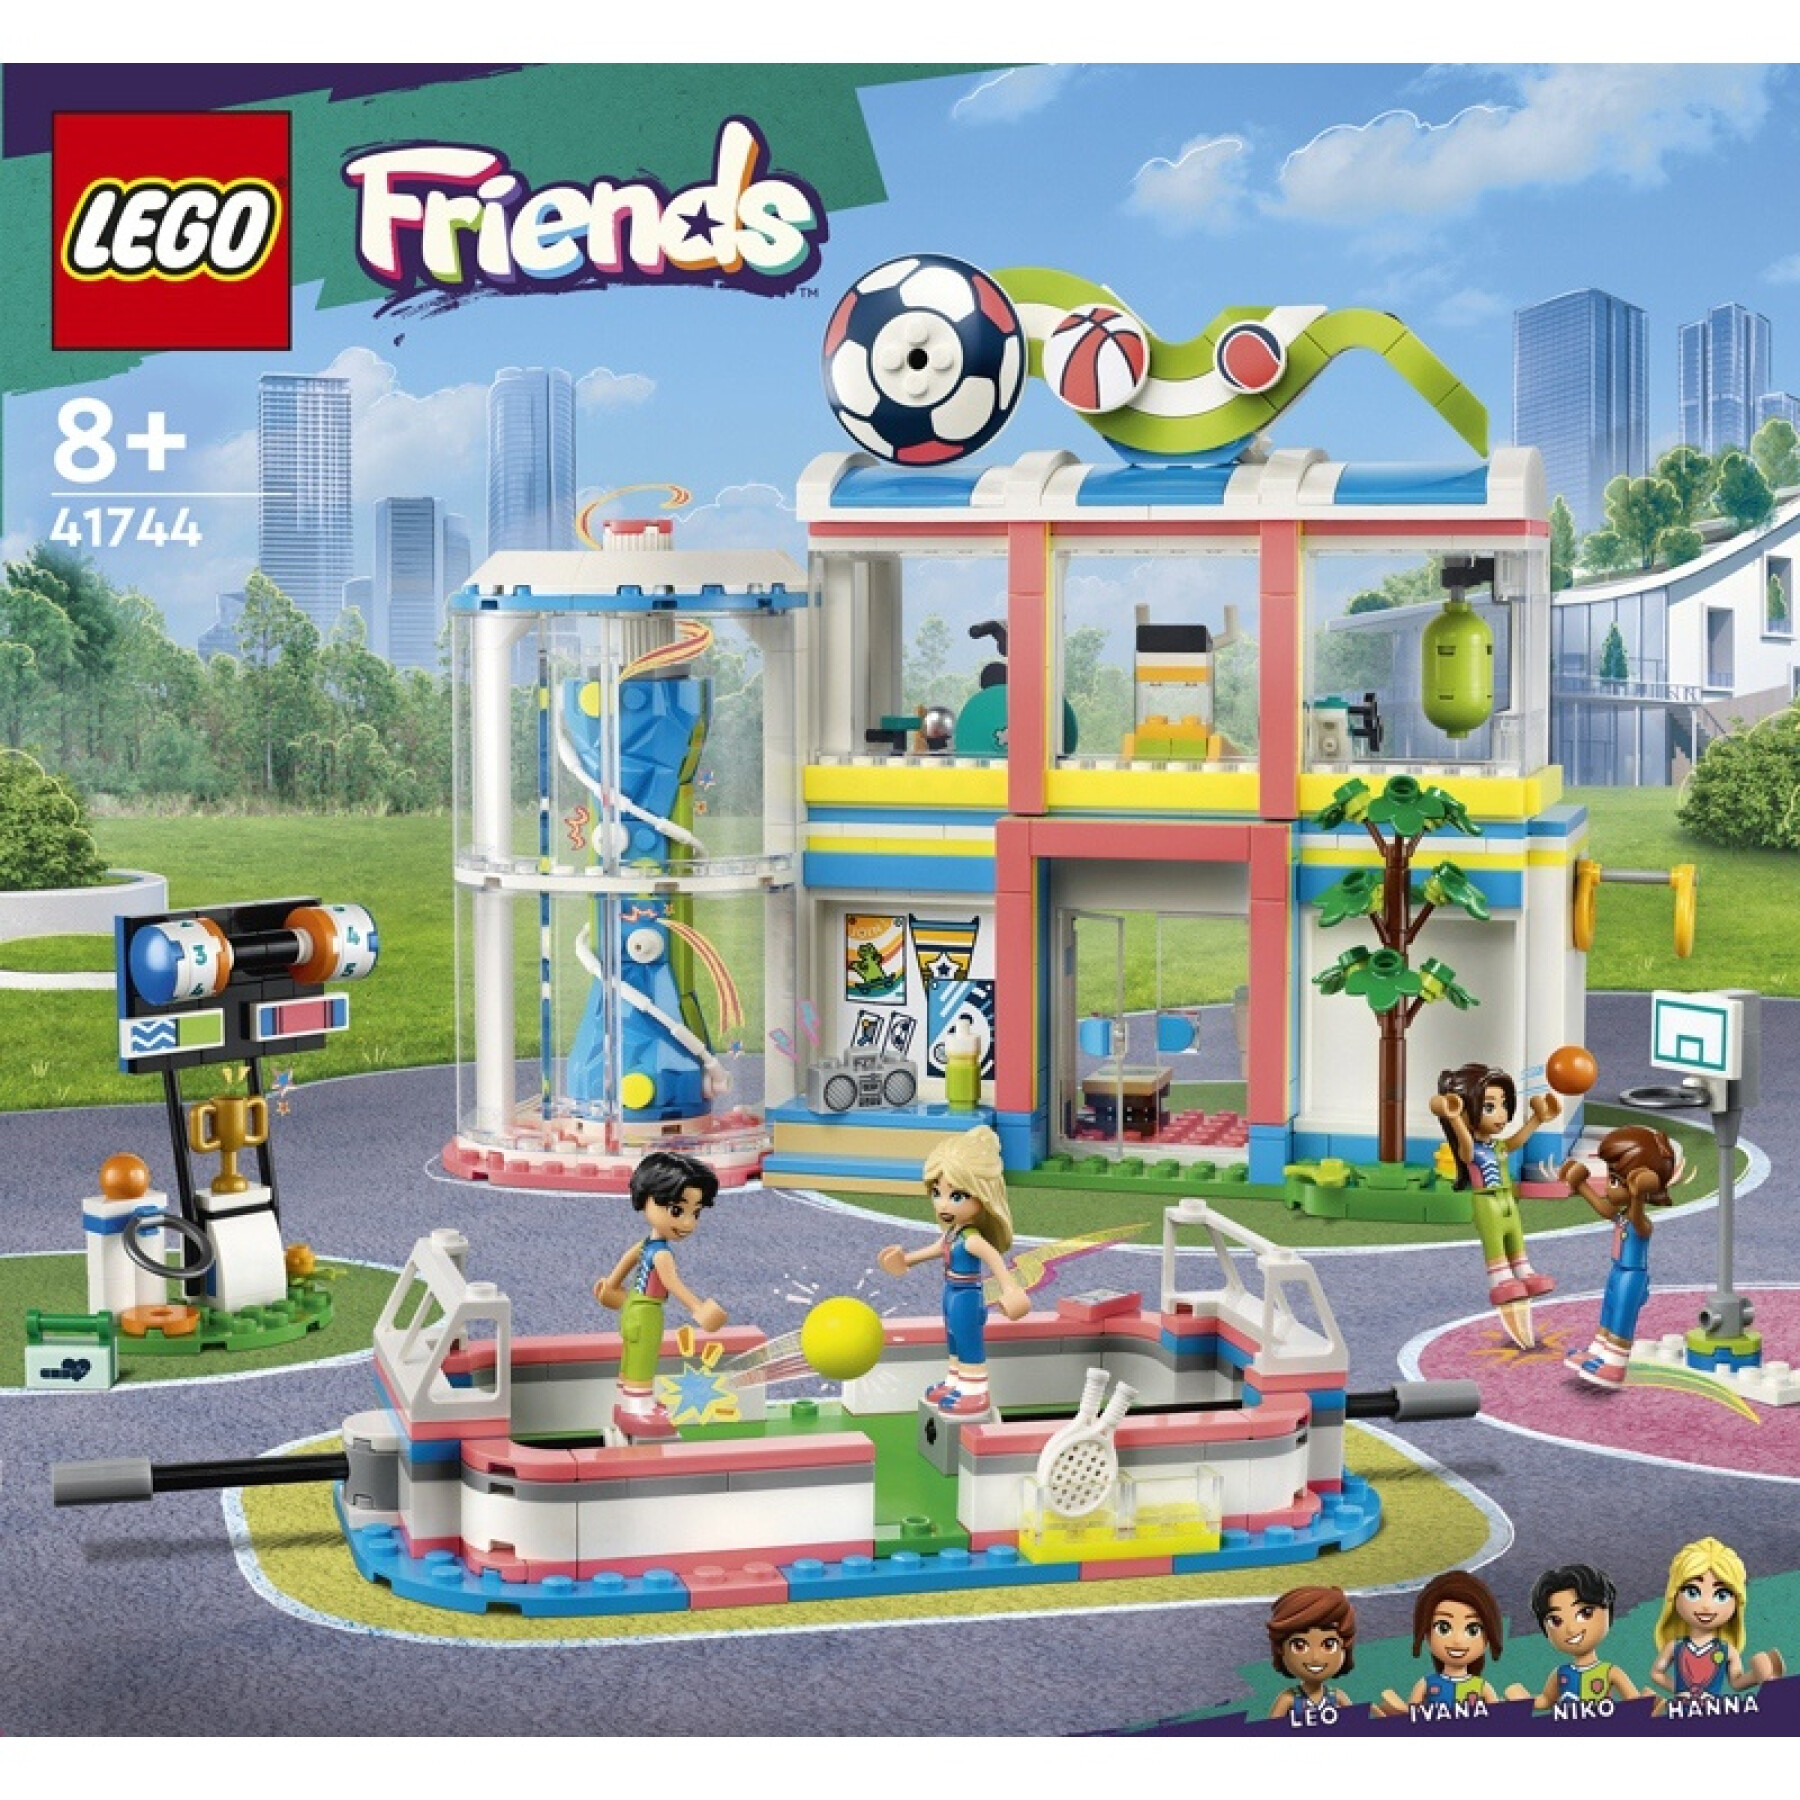 Jogos de construção no centro desportivo Lego Friends